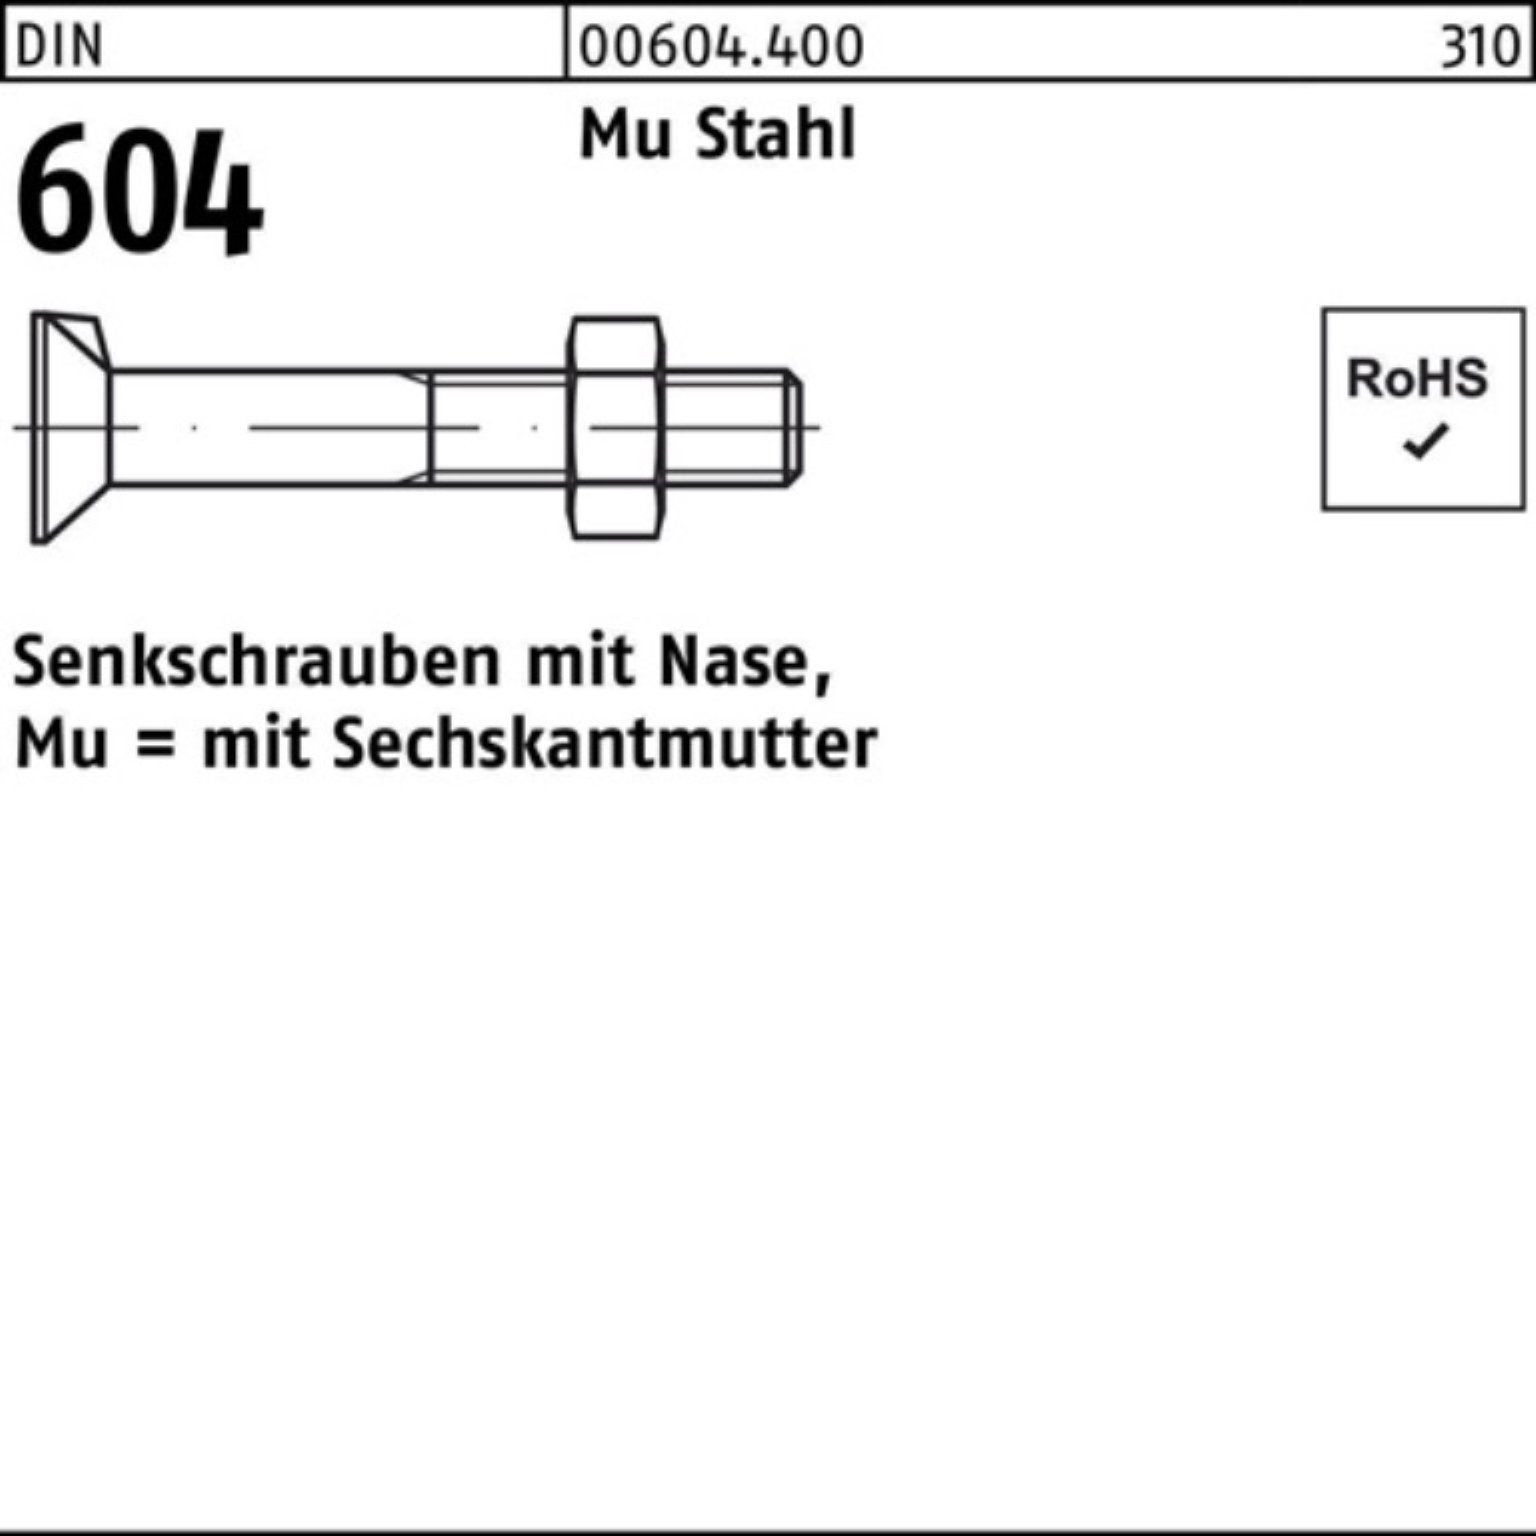 100er M12x Stahl Reyher 604 Pack Nase/6-ktmutter Senkschraube DIN Senkschraube 4.6 Mu 80 5